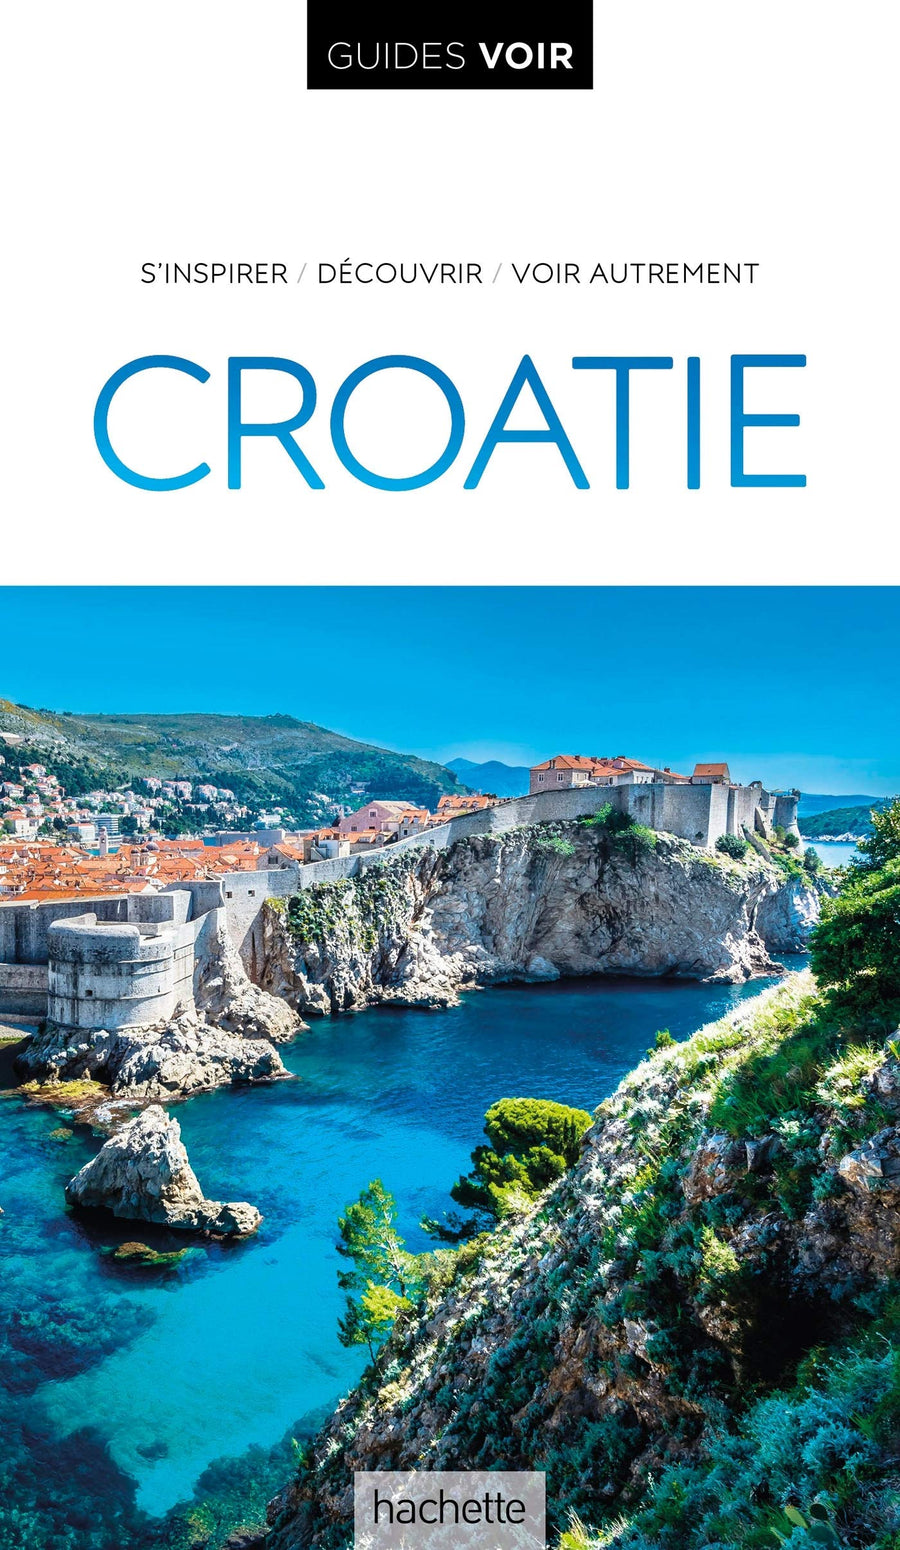 Guide de voyage - Croatie - Edition 2020 | Guides Voir guide de voyage Guides Voir 